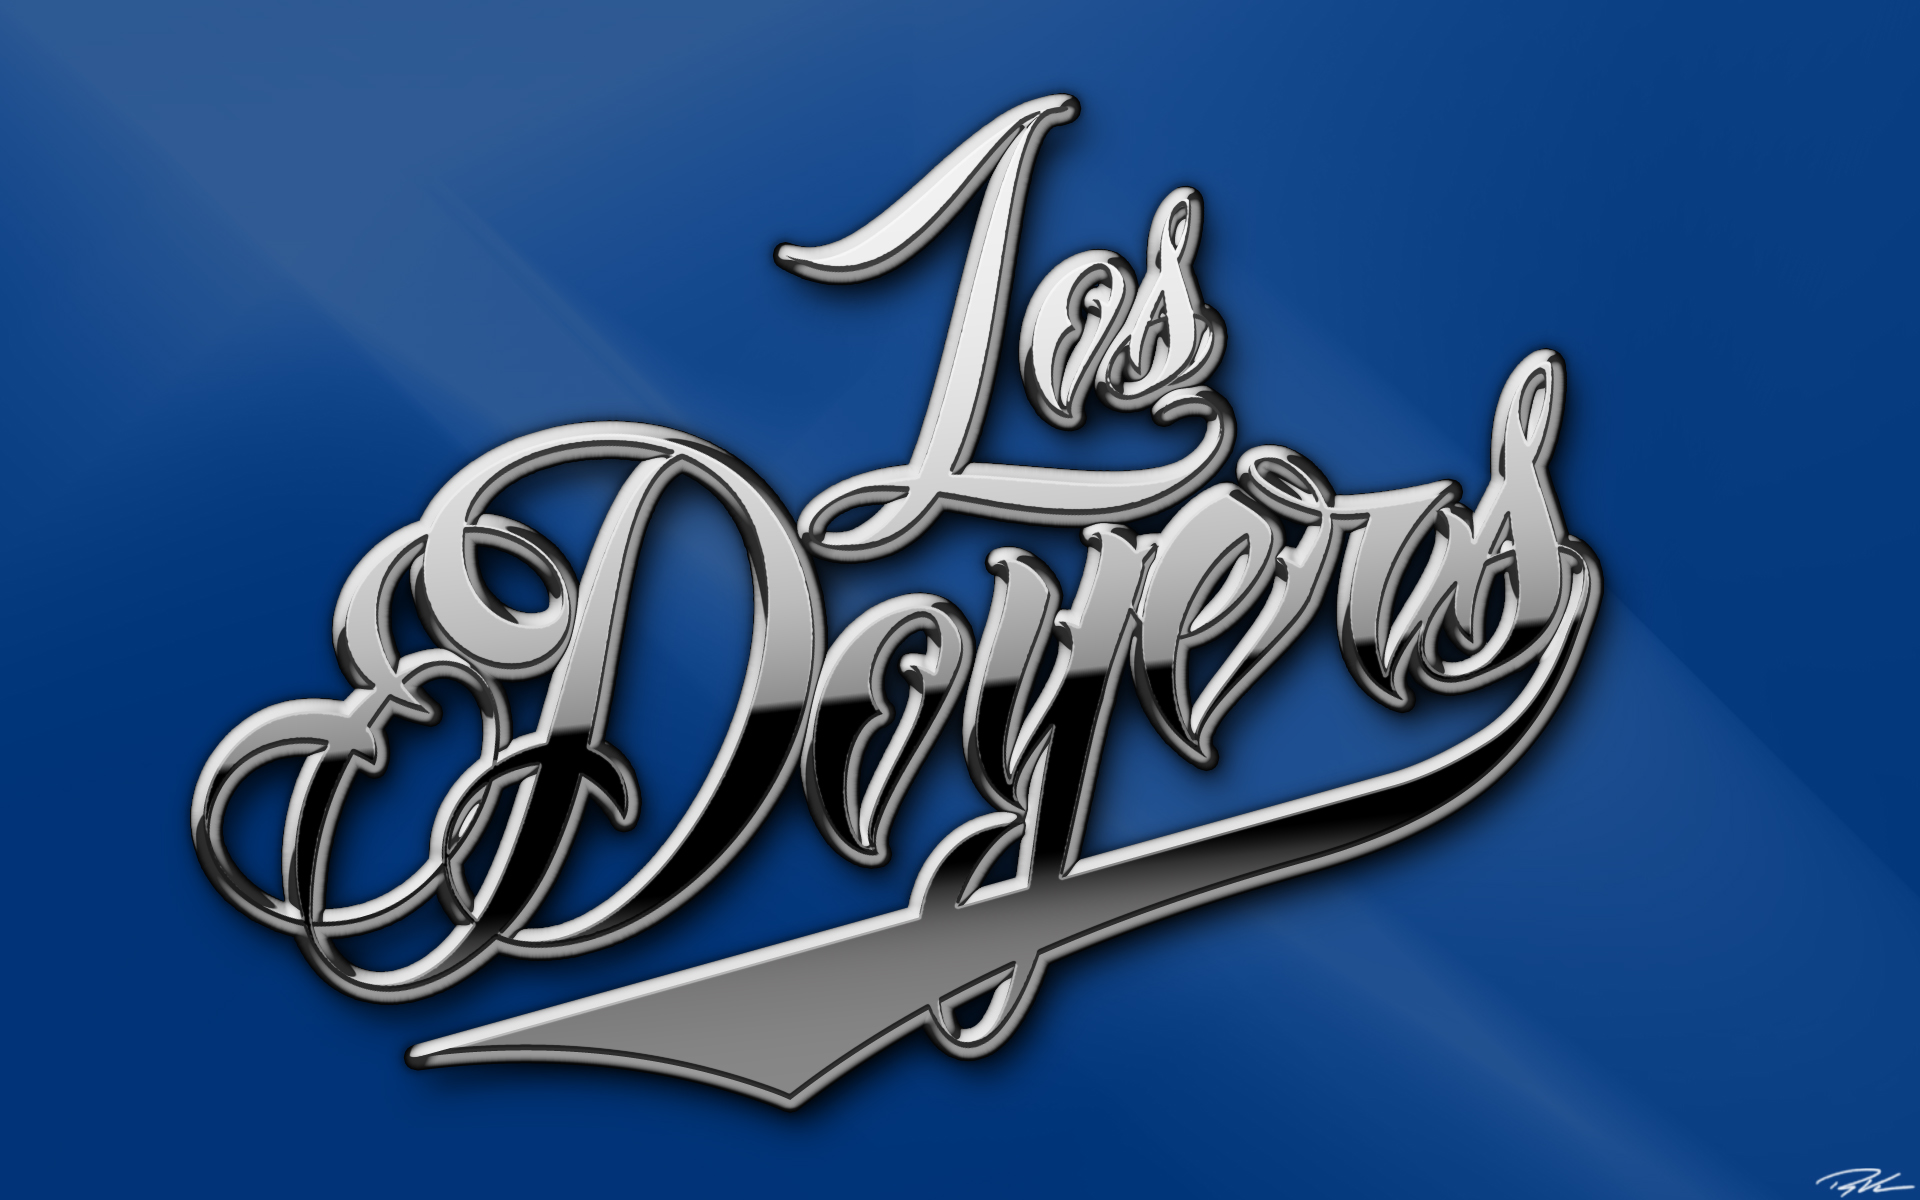 Los Angeles Dodgers on Twitter la dodgers 2019 HD phone wallpaper  Pxfuel